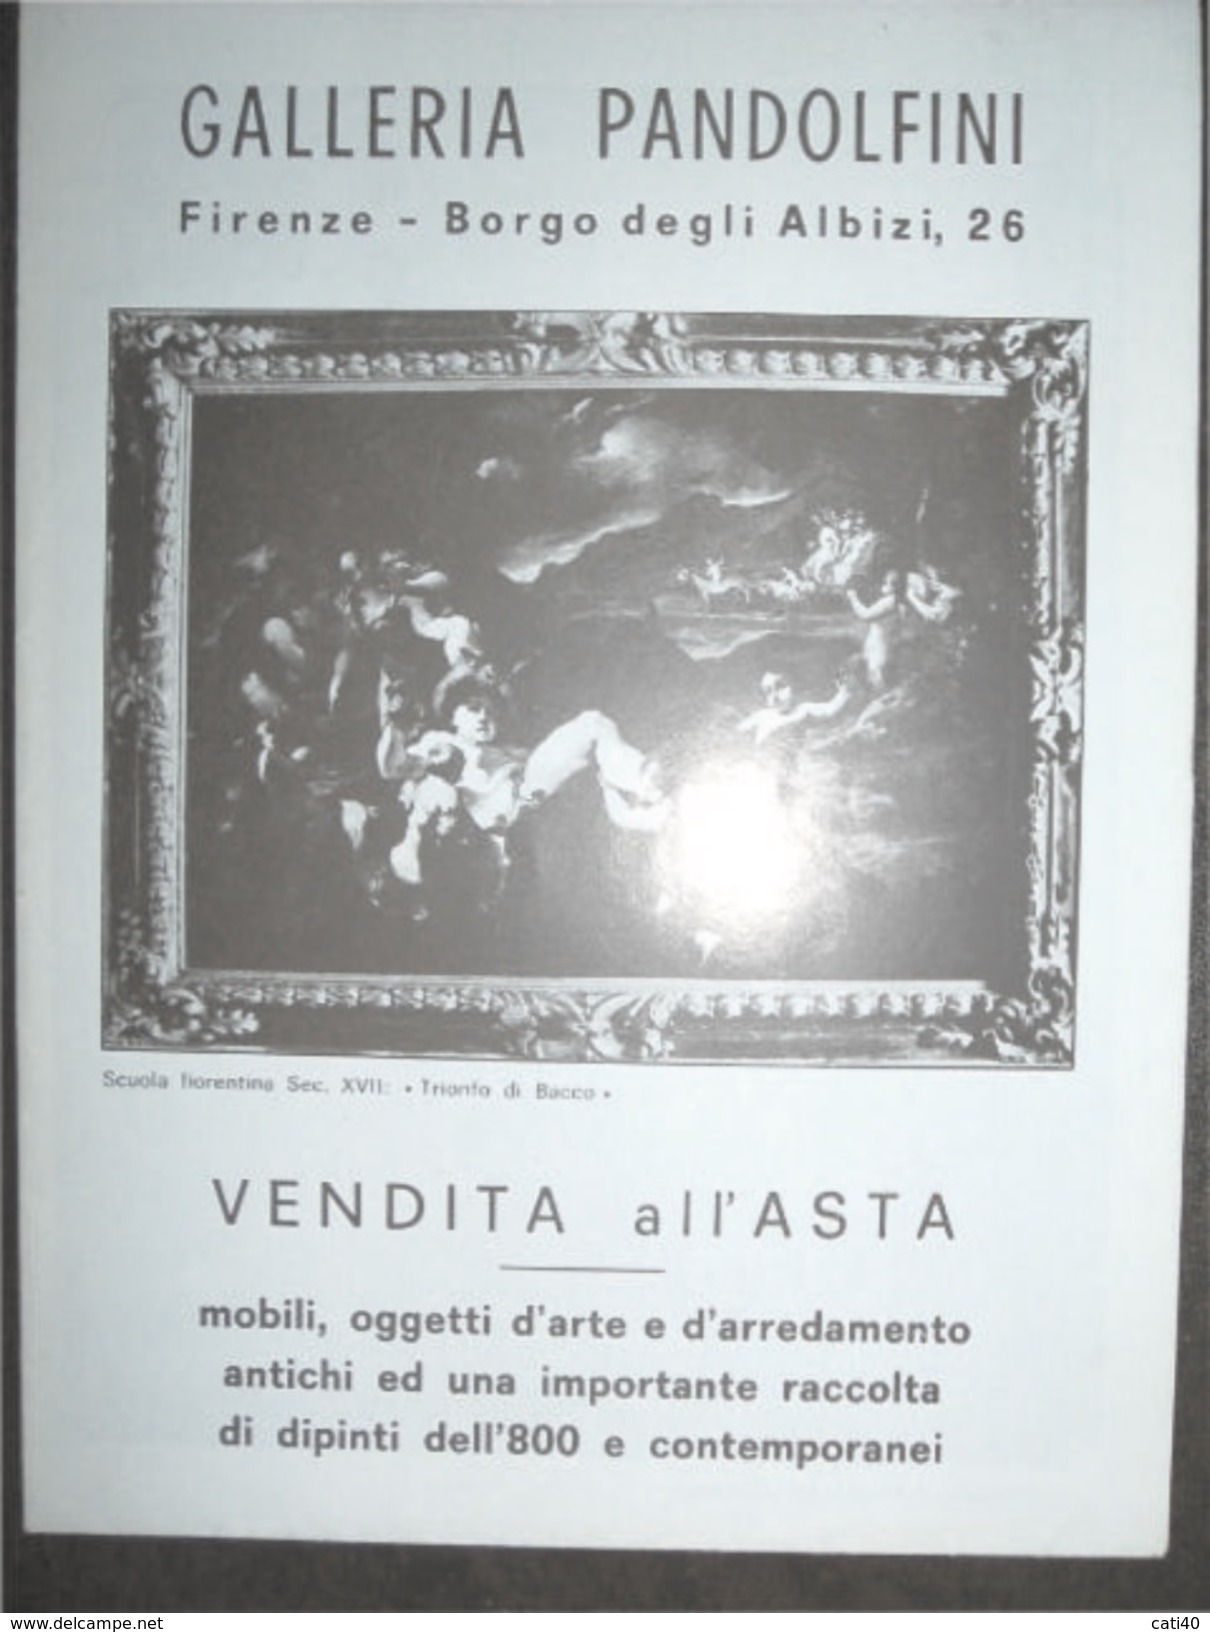 CATALOGO VENDITA ALL'ASTA DALLERUA PANDOLFINI FIRENZE  10-16/4/1972 DI MOBILI OGGETTI D'ARTE E DIPINTI... - Textos Científicos